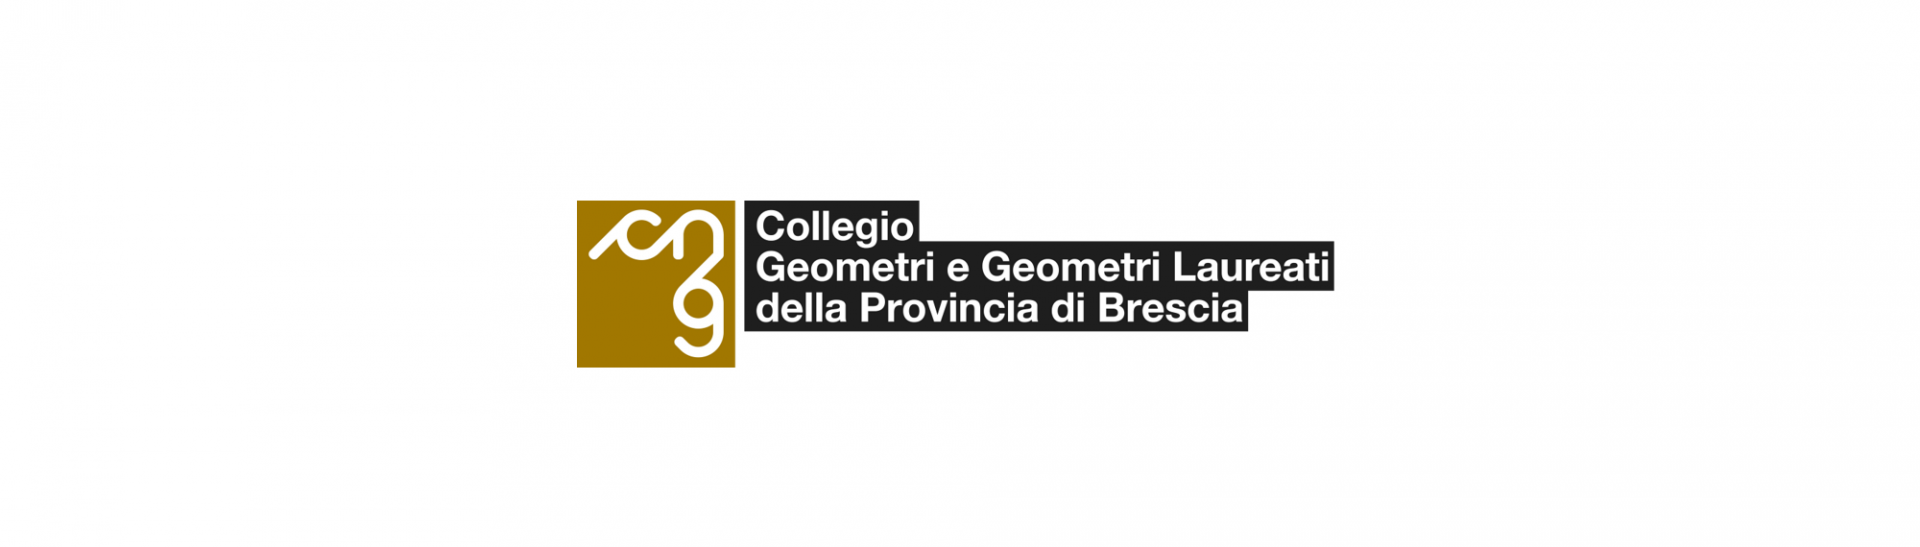 Collegio Geometri  e Geometri laureati Brescia - 